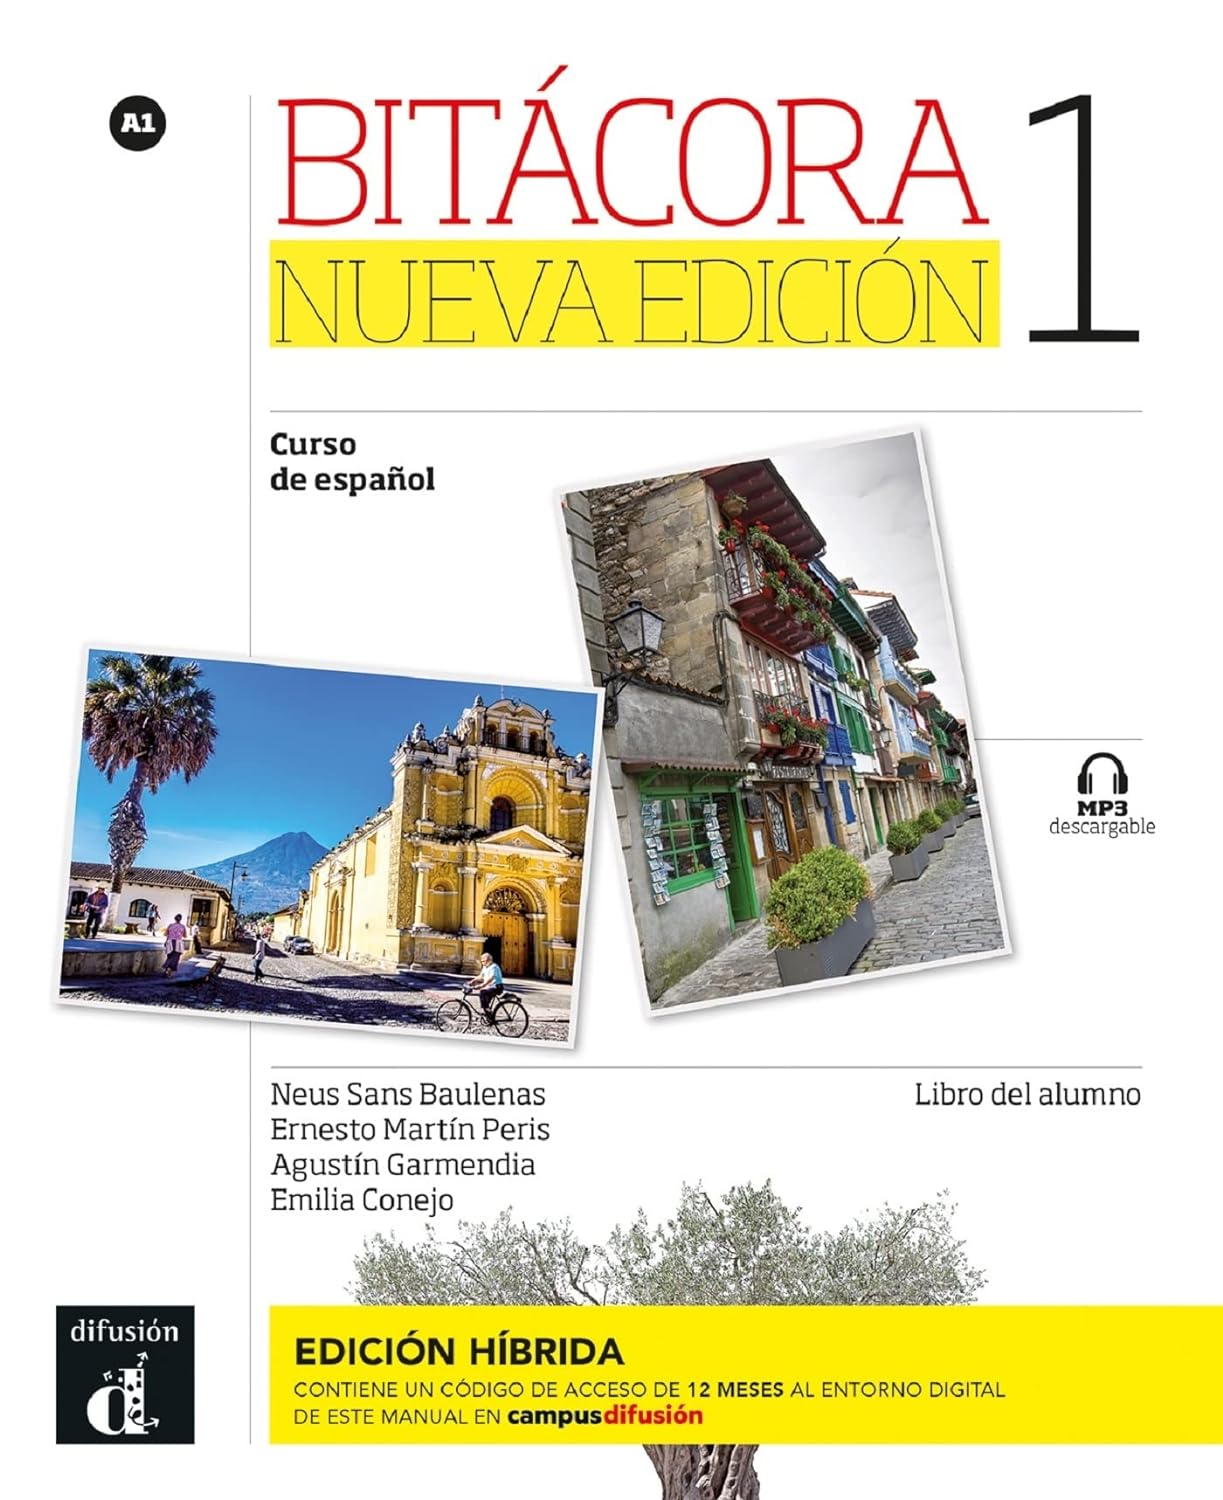 BITACORA NUEVA EDICION 1 (A1). LIBRO DEL ALUMNO (生徒用テキスト) Ed.hibrida